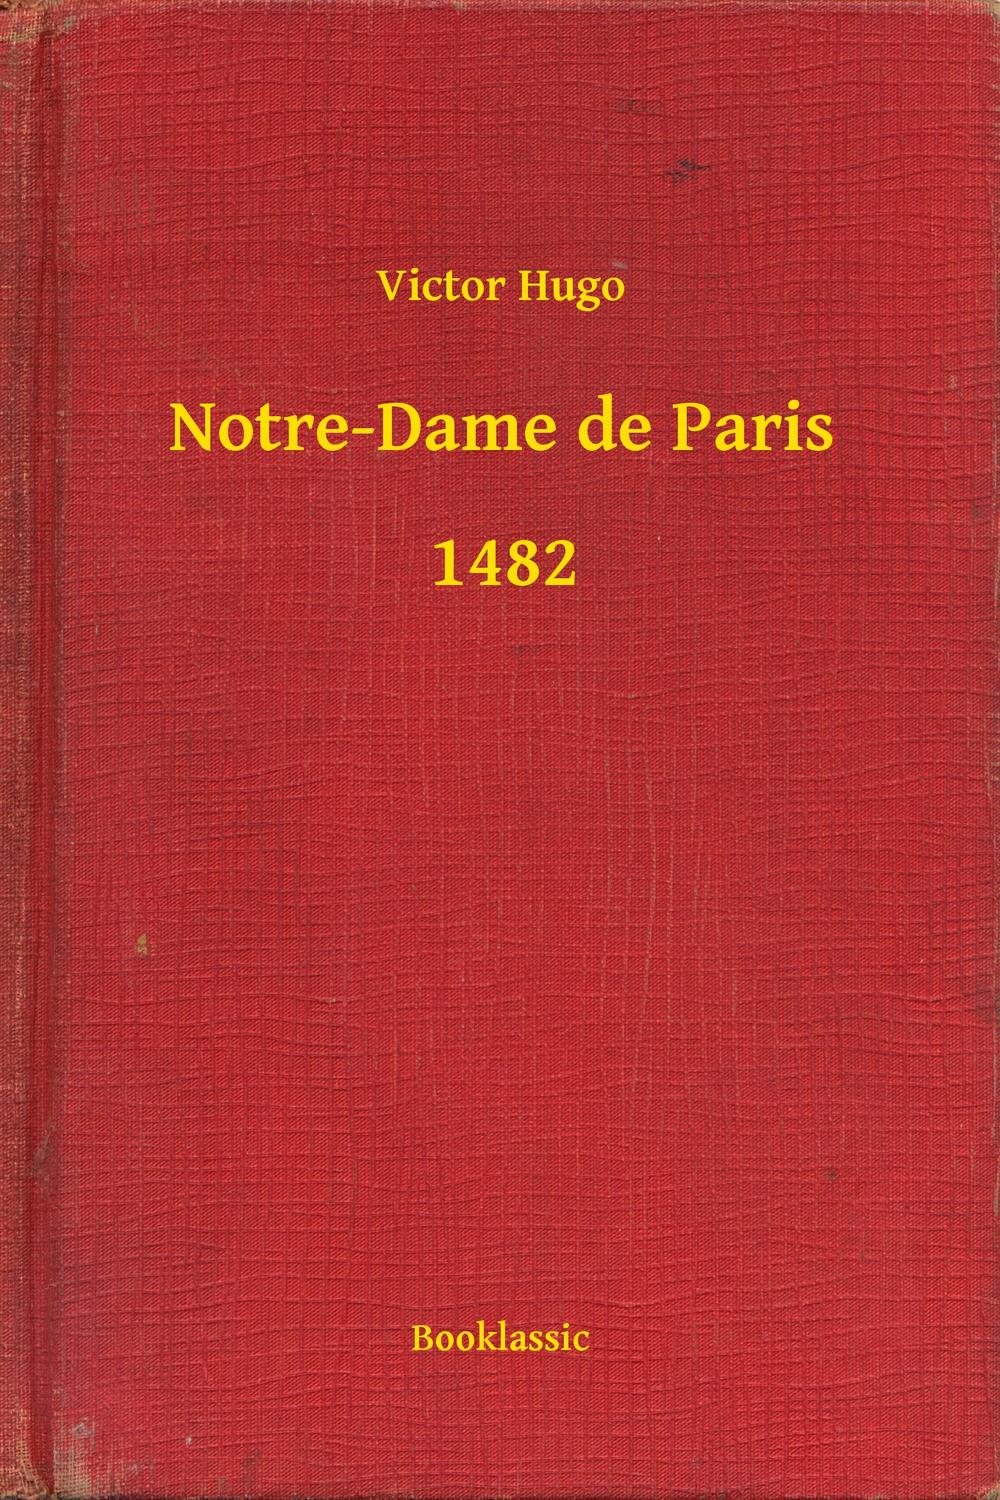 Notre-Dame de Paris - 1482 - Victor Hugo,,